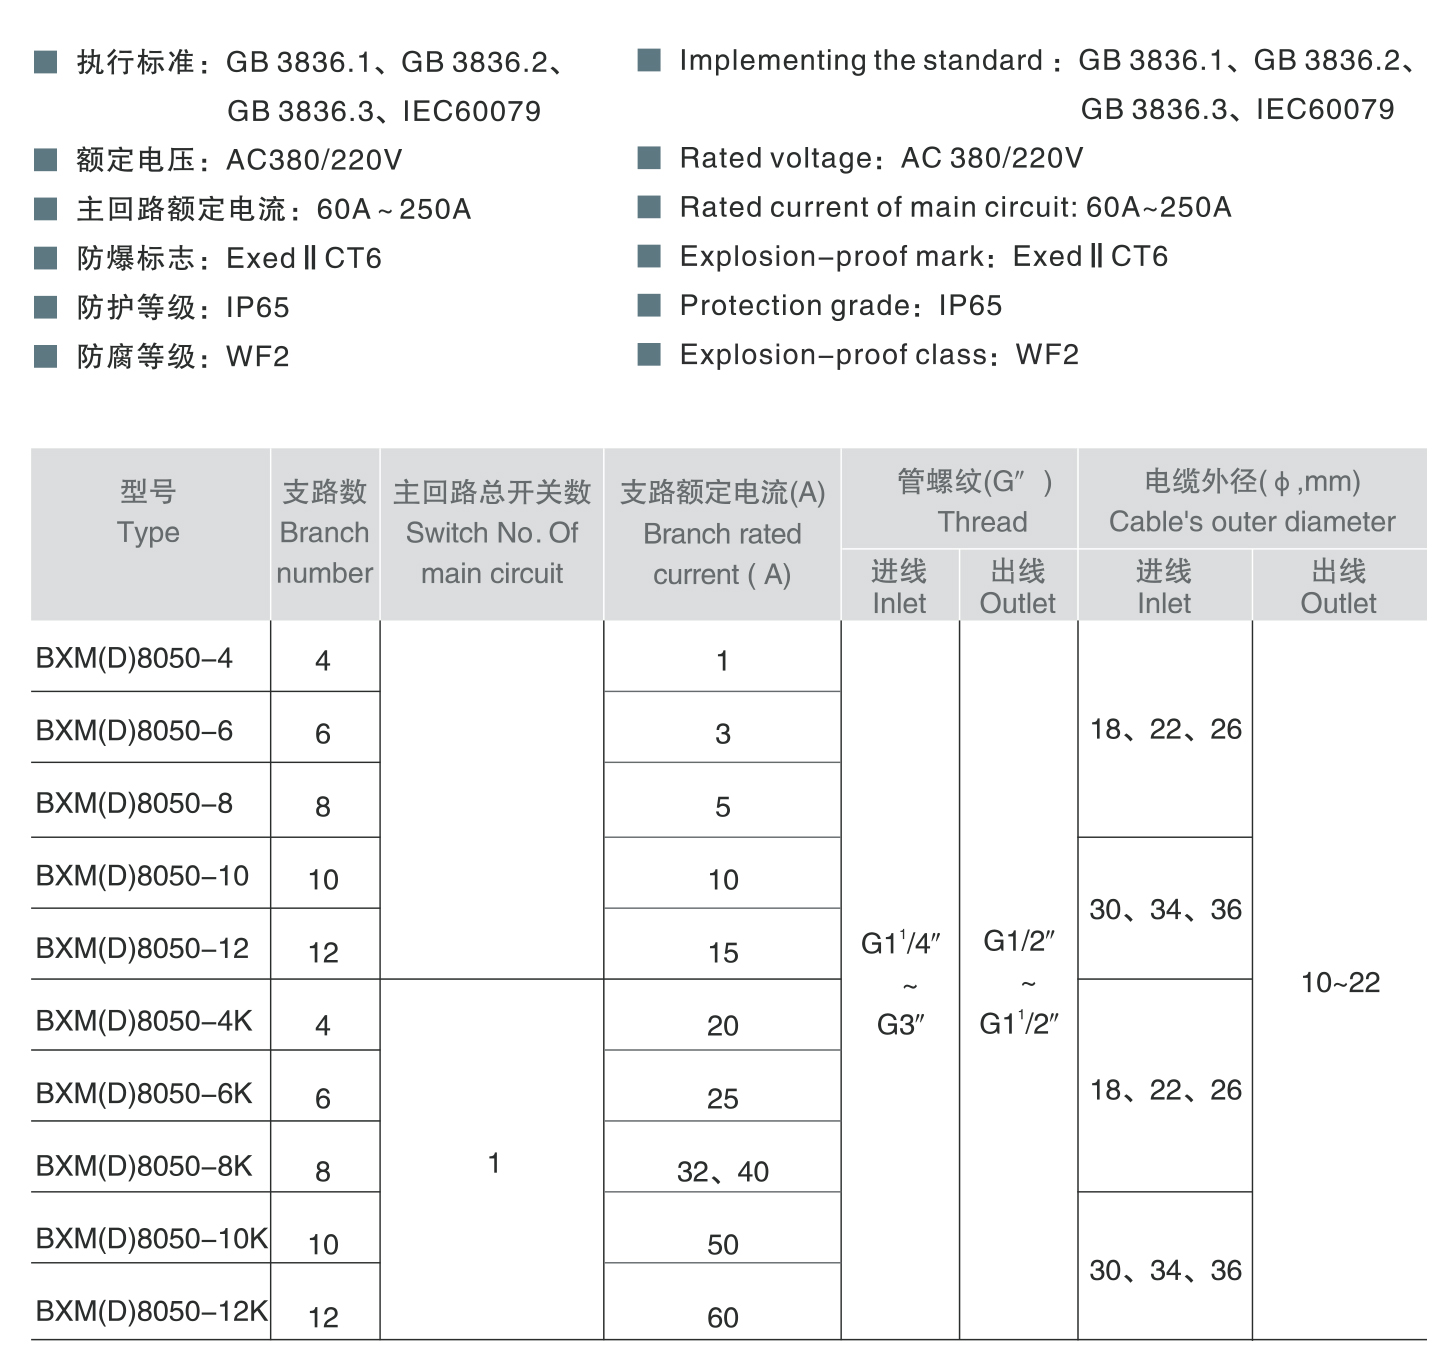 44118太阳成城集团BXM(D)8050系列防爆防腐照明（动力）配电箱（ⅡC） 